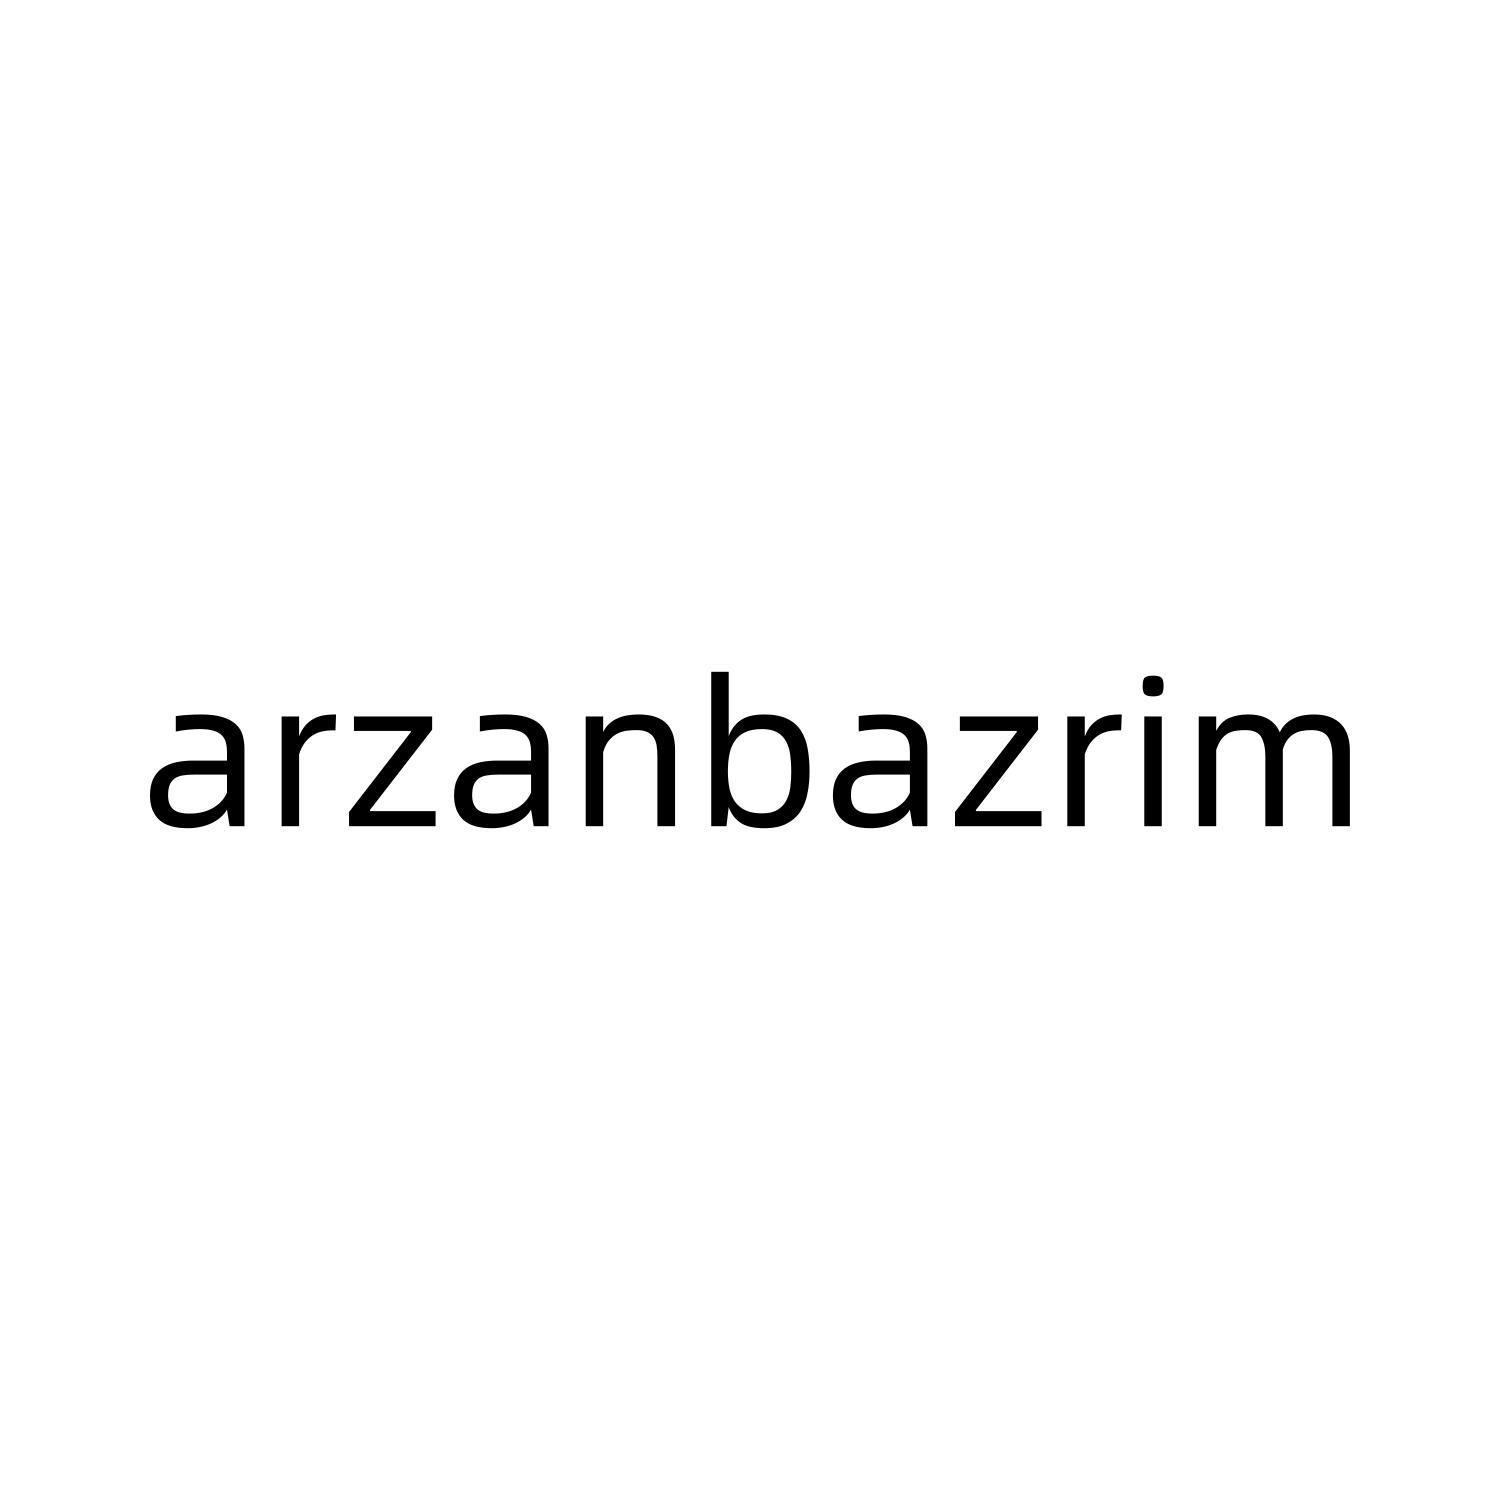 ARZANBAZRIMlogo